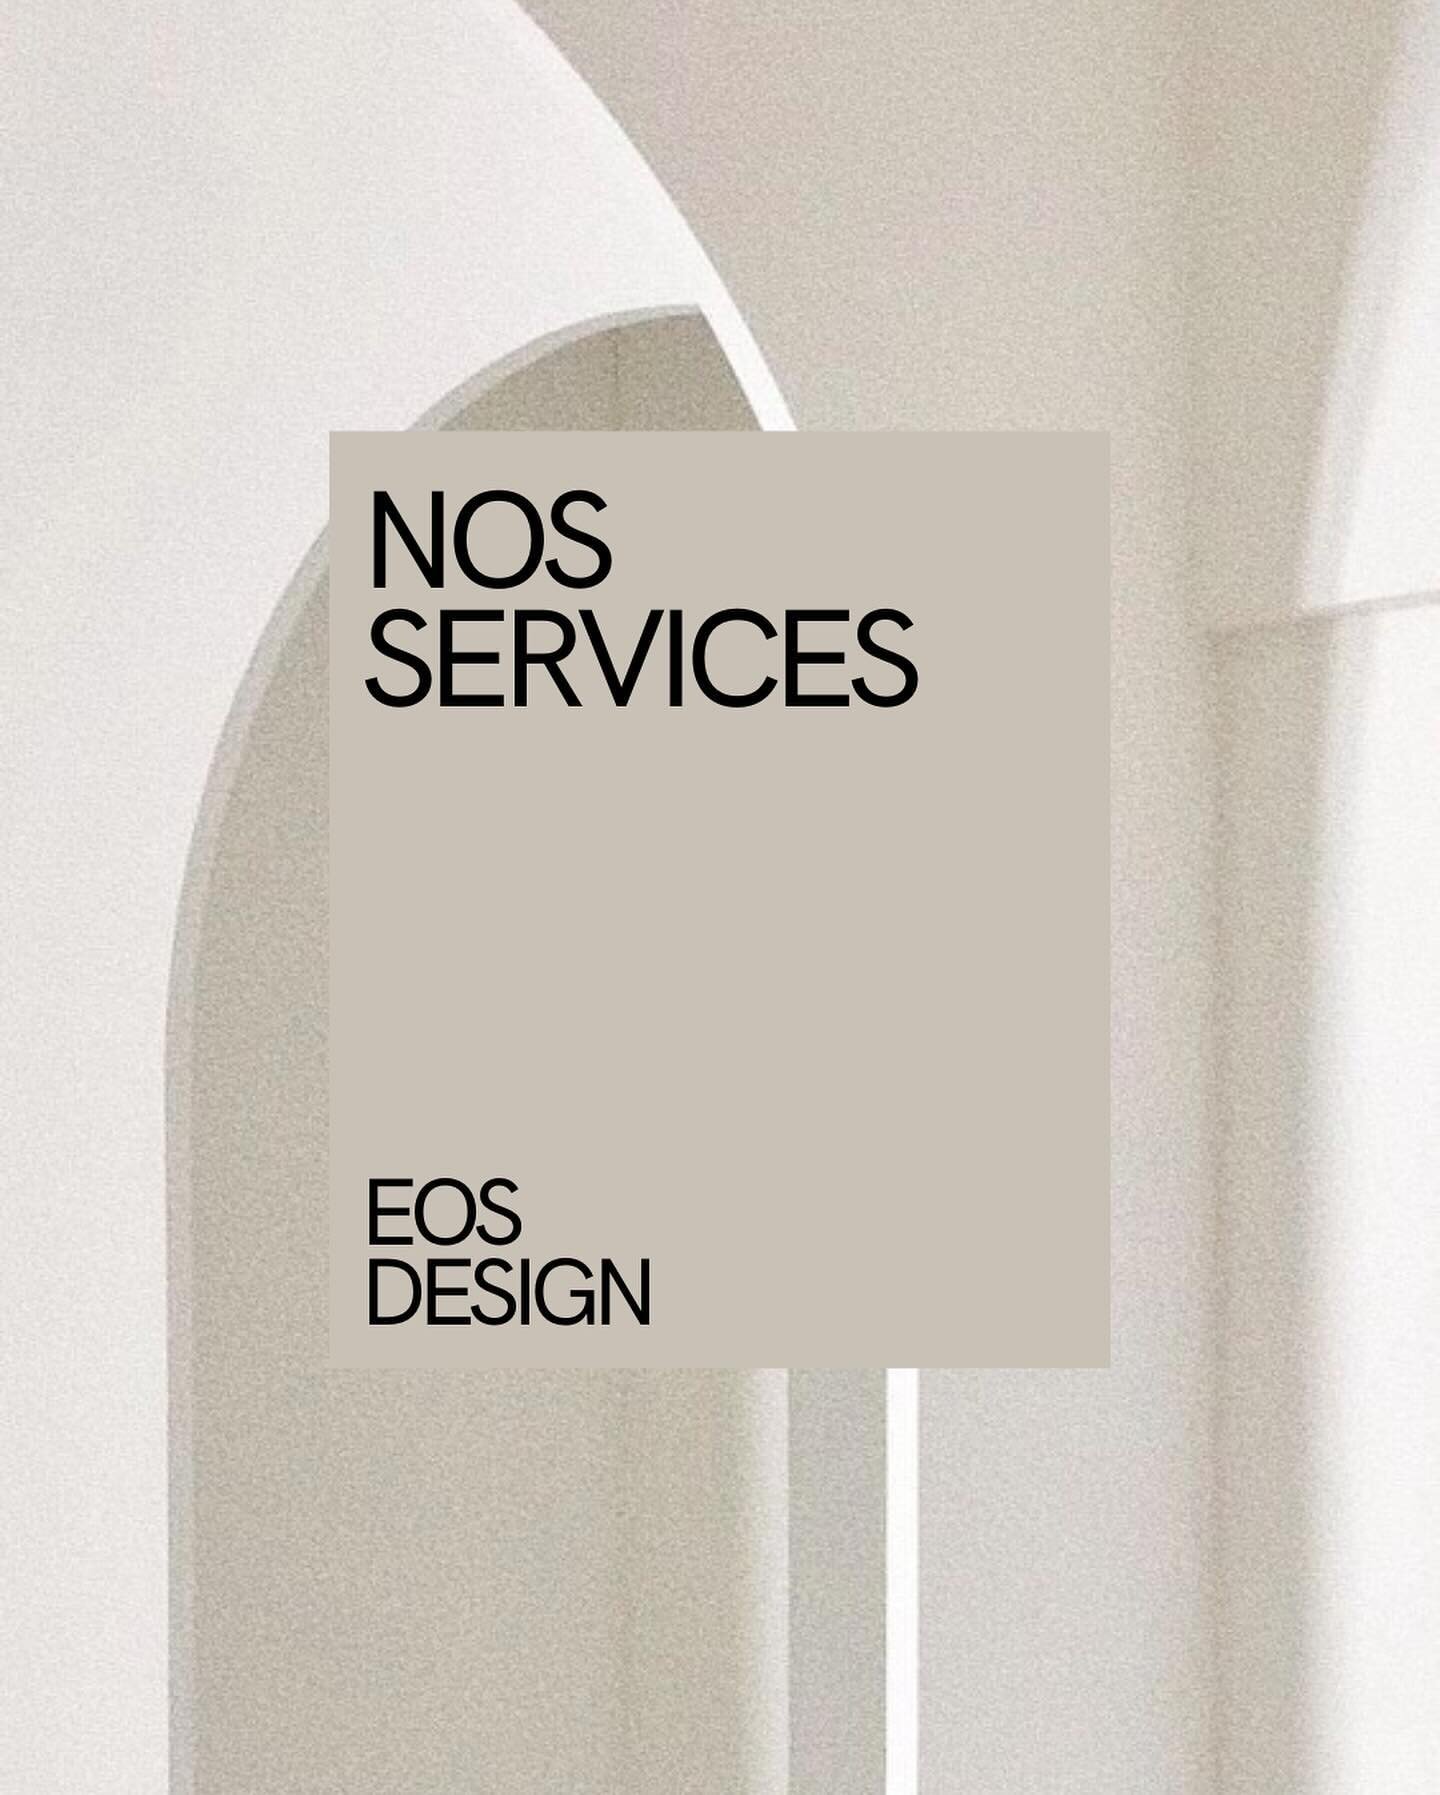 EOS Design n&rsquo;est pas seulement un magasin de meubles, nous proposons &eacute;galement plusieurs services adapt&eacute;s au entreprises 💼 

#eosdesign #design